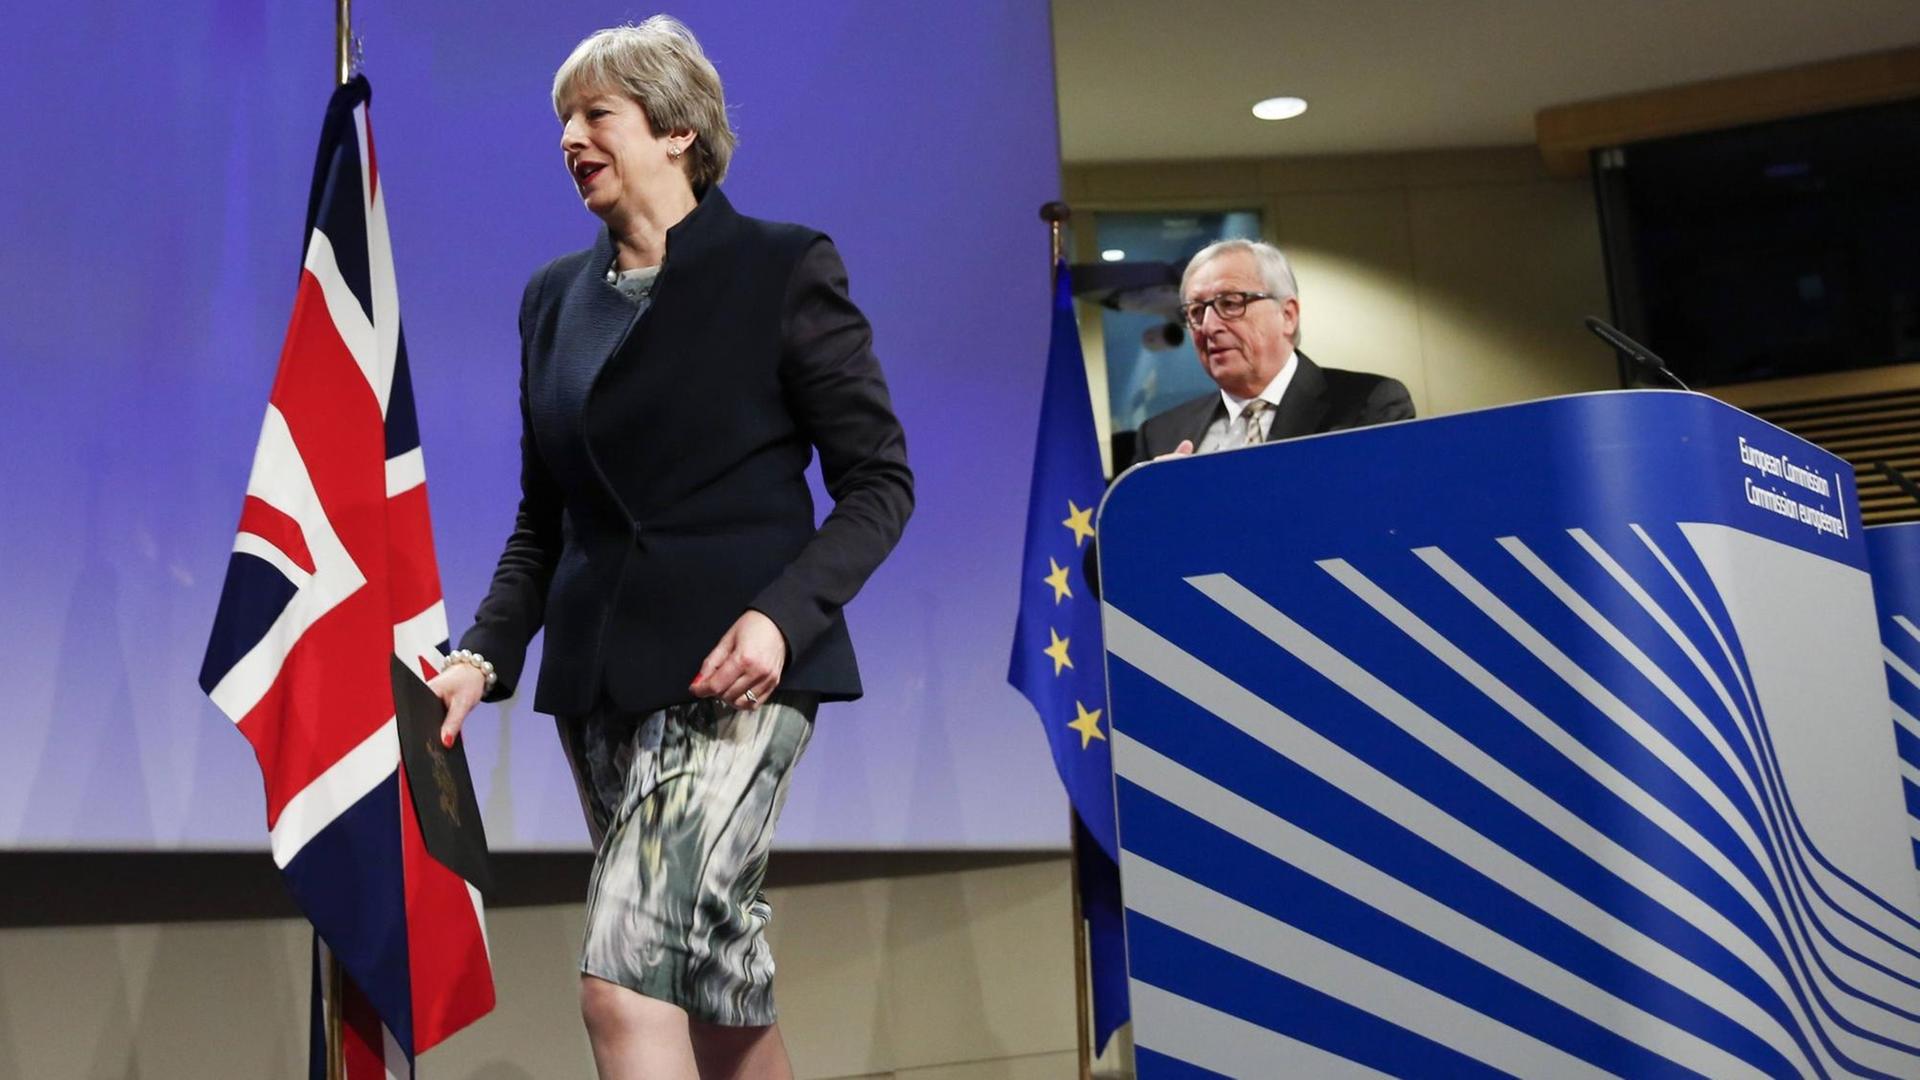 Die britische Premierministerin Theresa May und EU-Kommissions Präsident Jean-Claude Juncker bei einer Pressekonferenz in Brüssel nach ihrem Treffen zu den Brexit-Verhandlungen